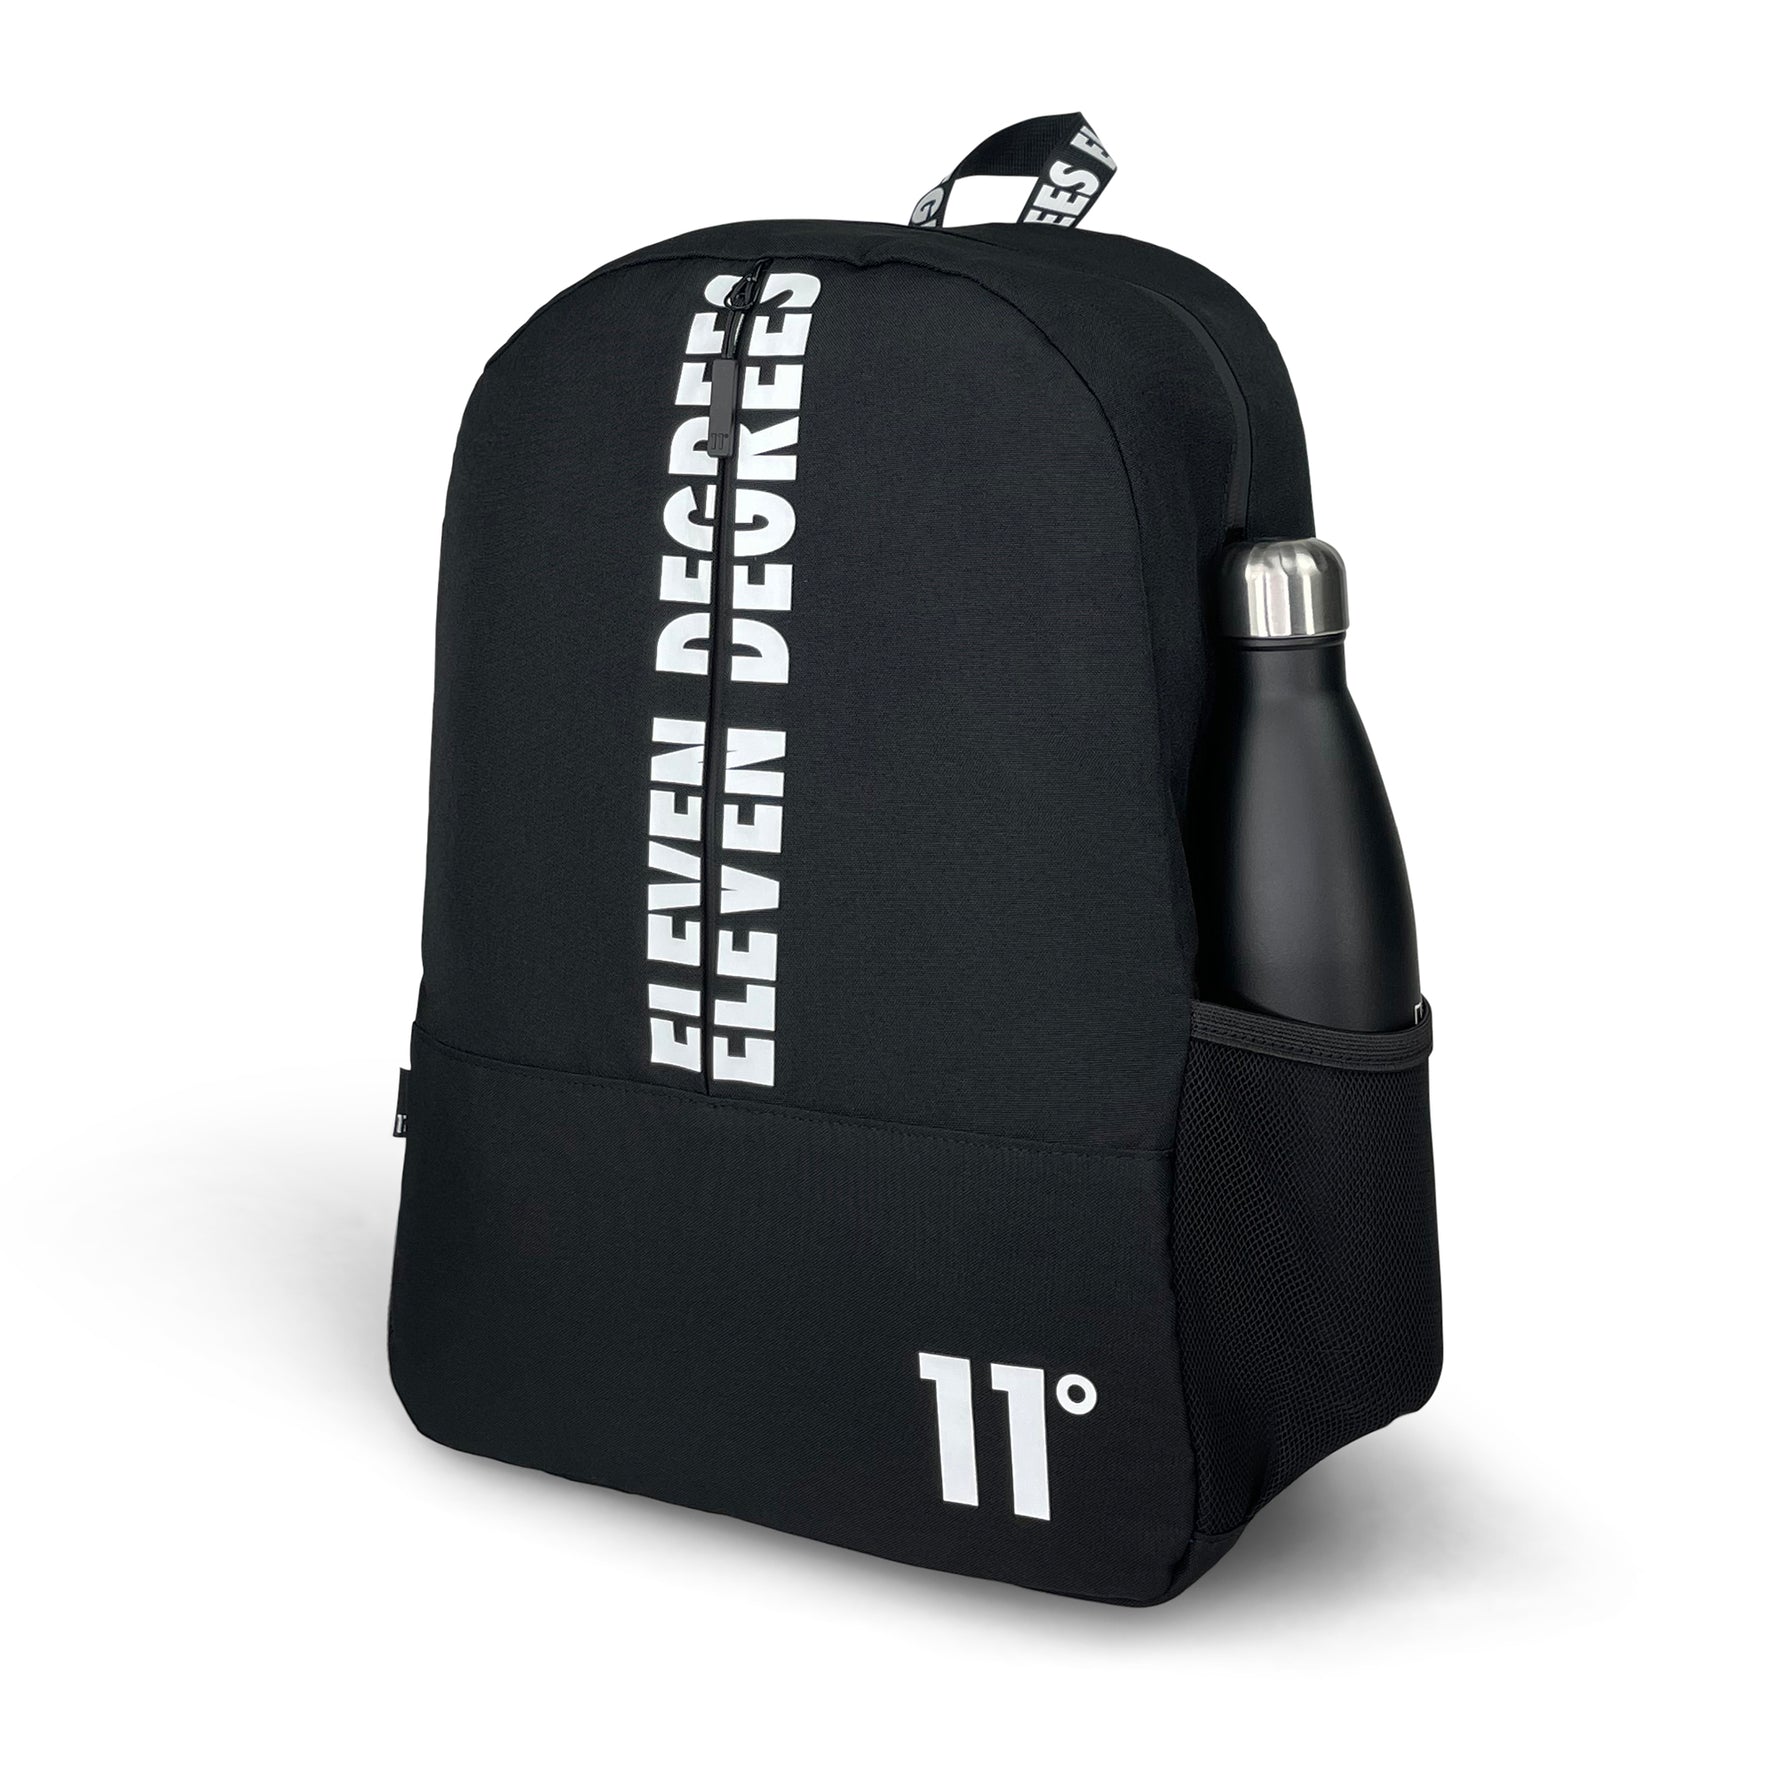 Printed Front Backpack-Backpack-11 Degrees-Black-SchoolBagsAndStuff